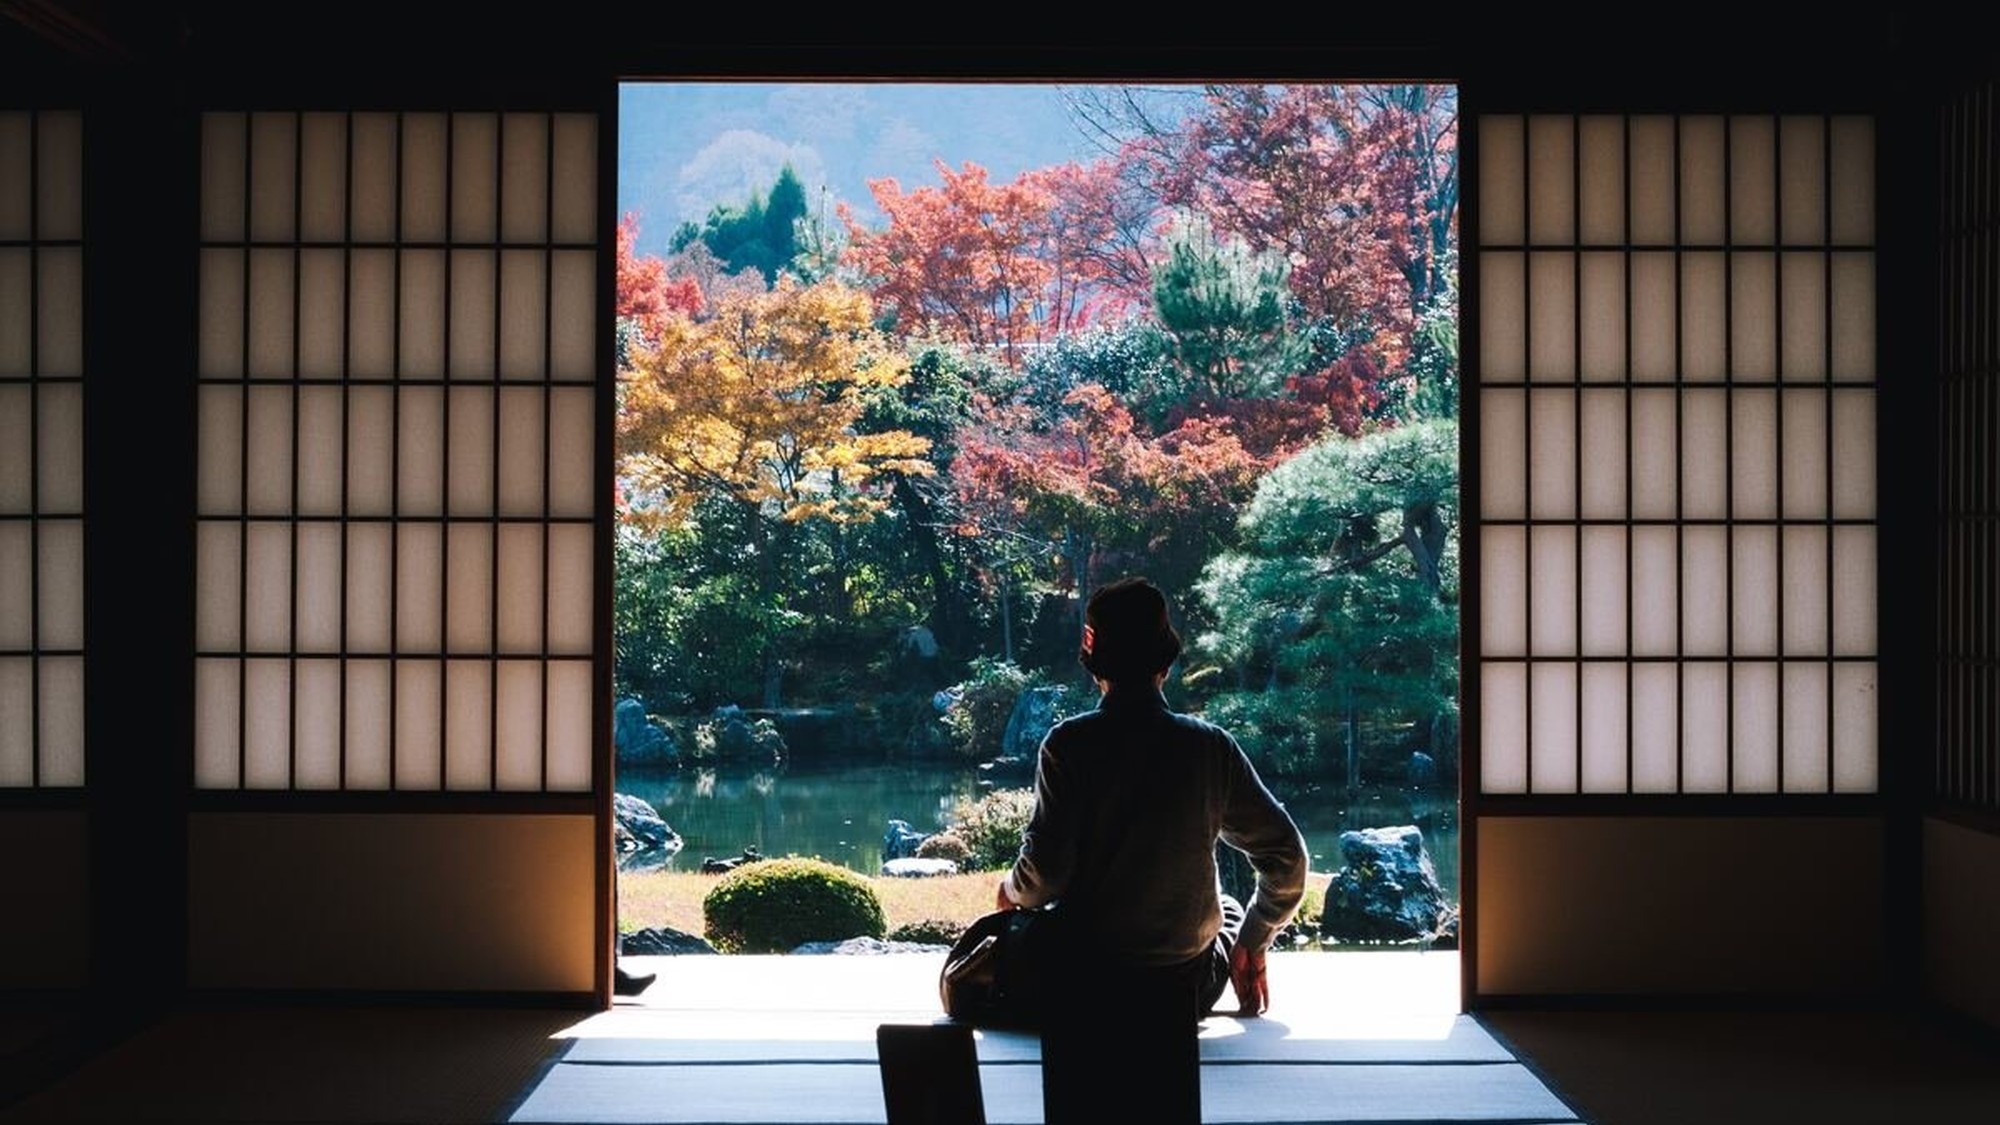 【京都・天龍寺】壮大な庭園風景が楽しめます。